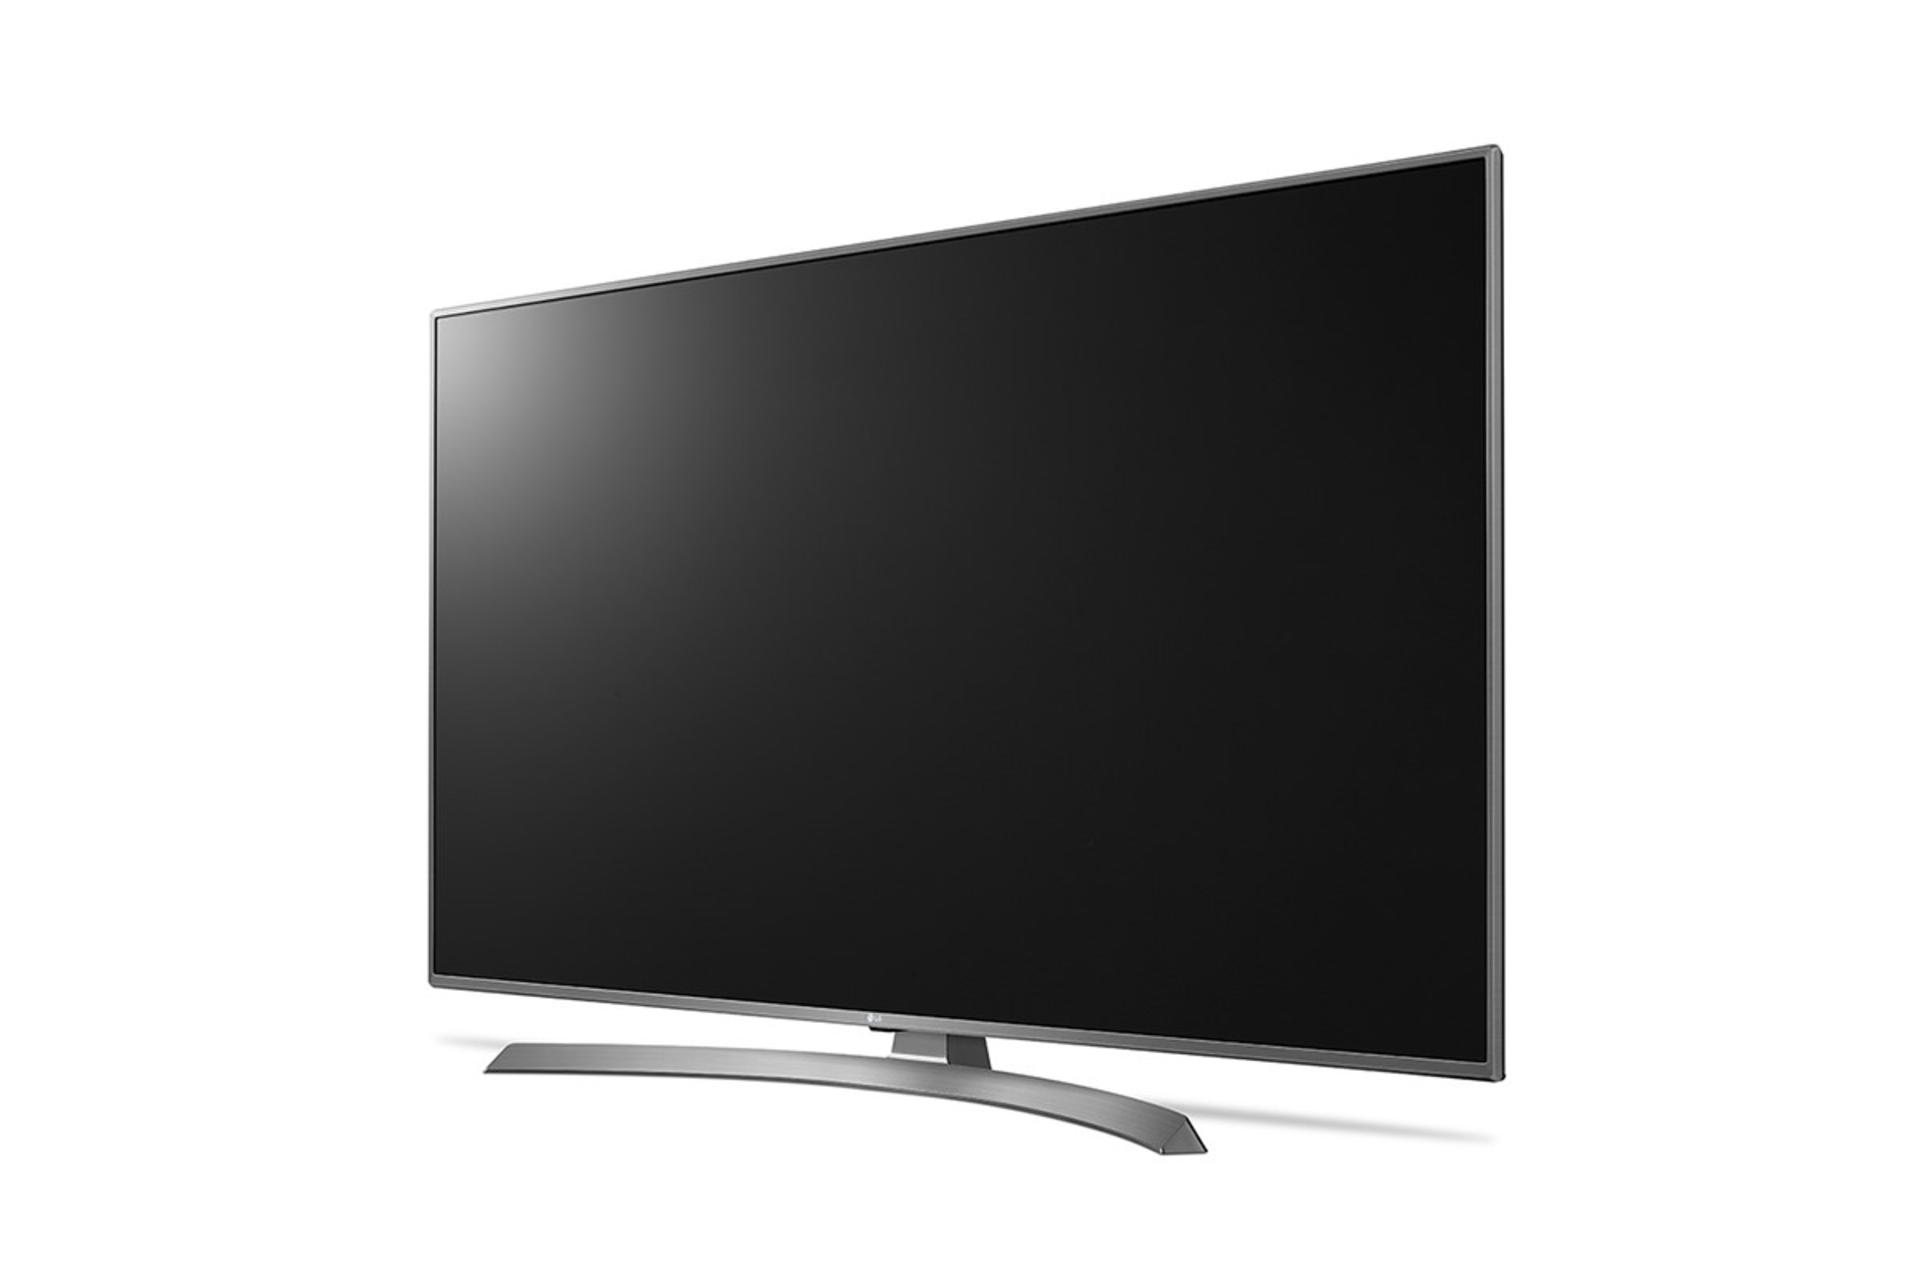 نمای نیم رخ تلویزیون ال جی UJ6900 مدل 49 اینچ با بدنه نقره ای و صفحه خاموش